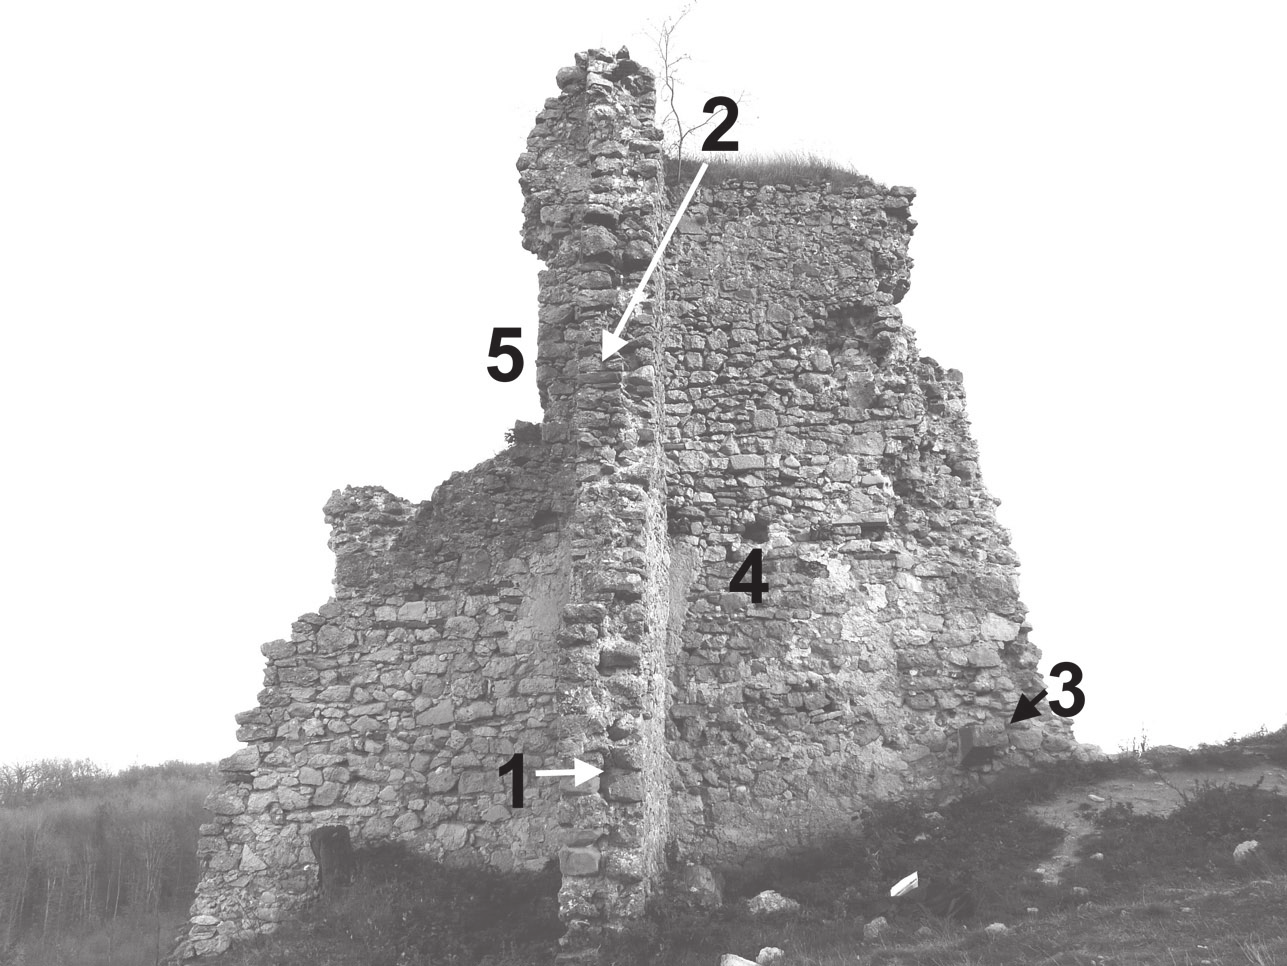 Obr. 9. Torzo neskorogotického hradného paláca so zvyškom priečky v ktorej sa zachovali dve špalety portálov (1,2) nad sebou.